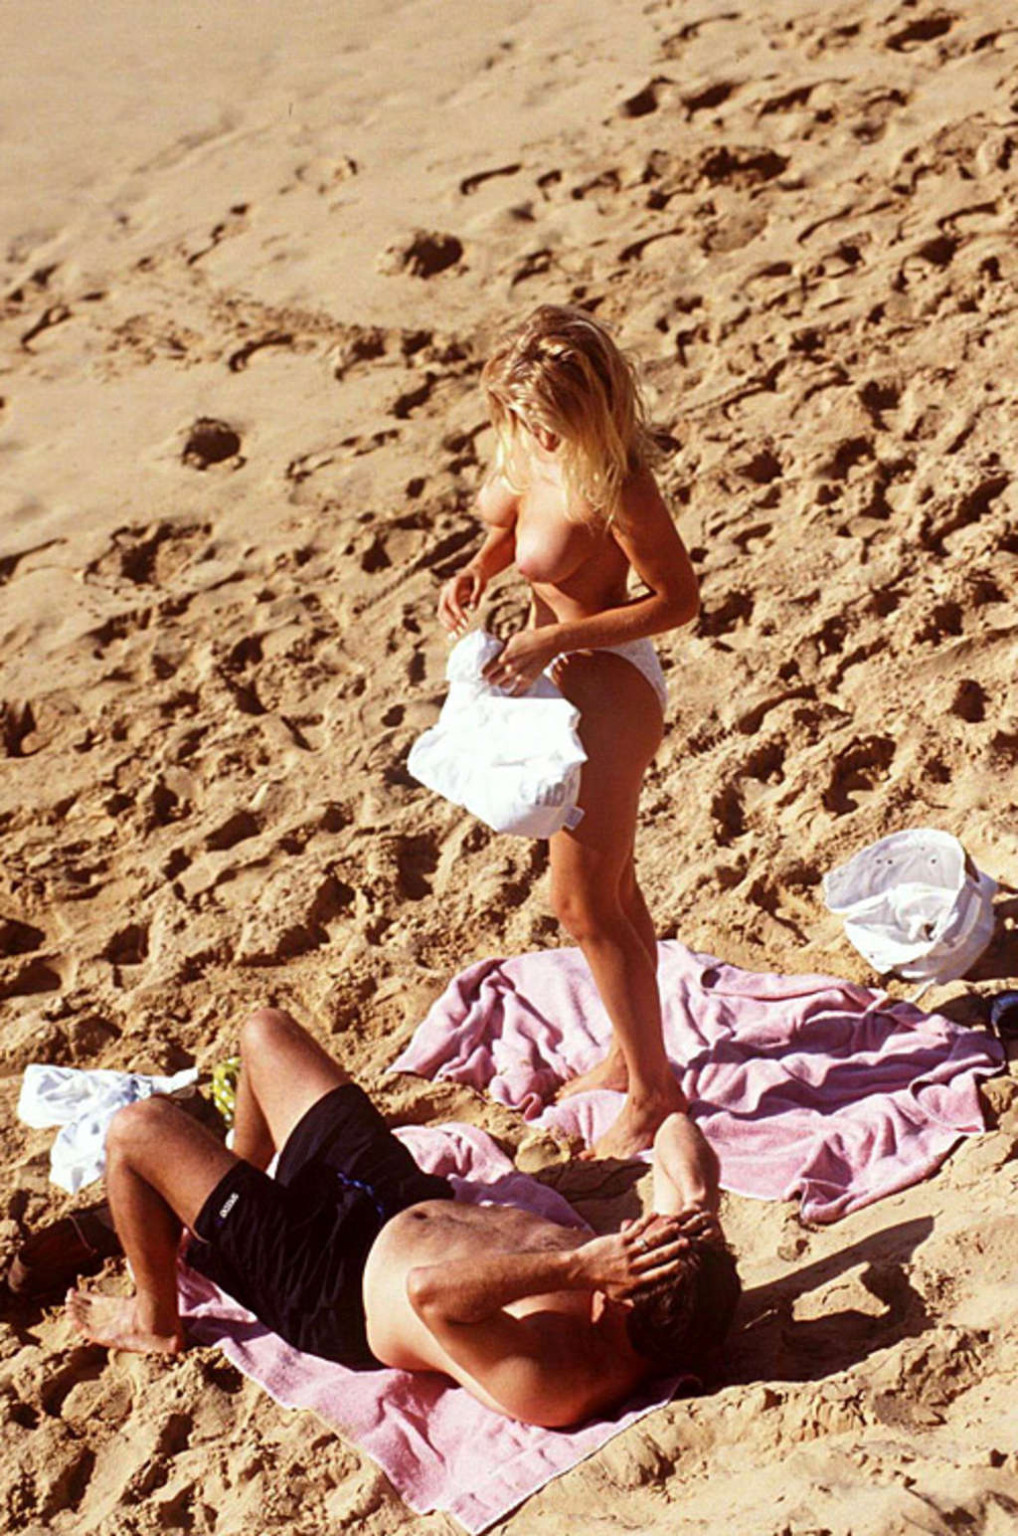 ジェナ・リー・ノリン、ビーチで巨乳を披露するパパラッチ写真
 #75386055